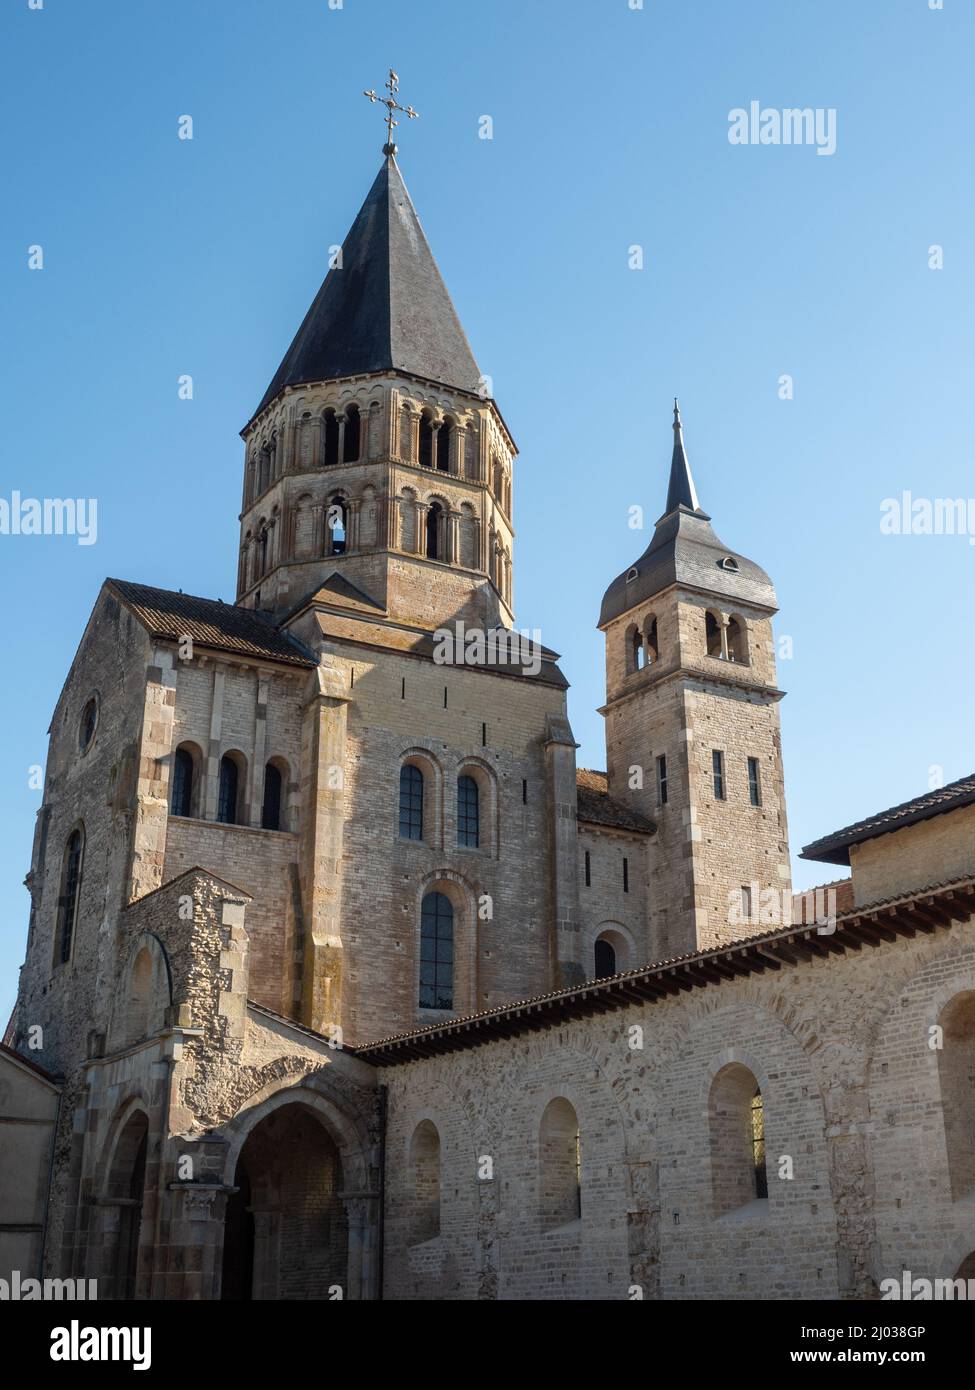 Murs et tours étant le dernier coin restant de l'immense église abbatiale construite à Cluny en 1100s, Cluny, Saône-et-Loire, Bourgogne, France Banque D'Images